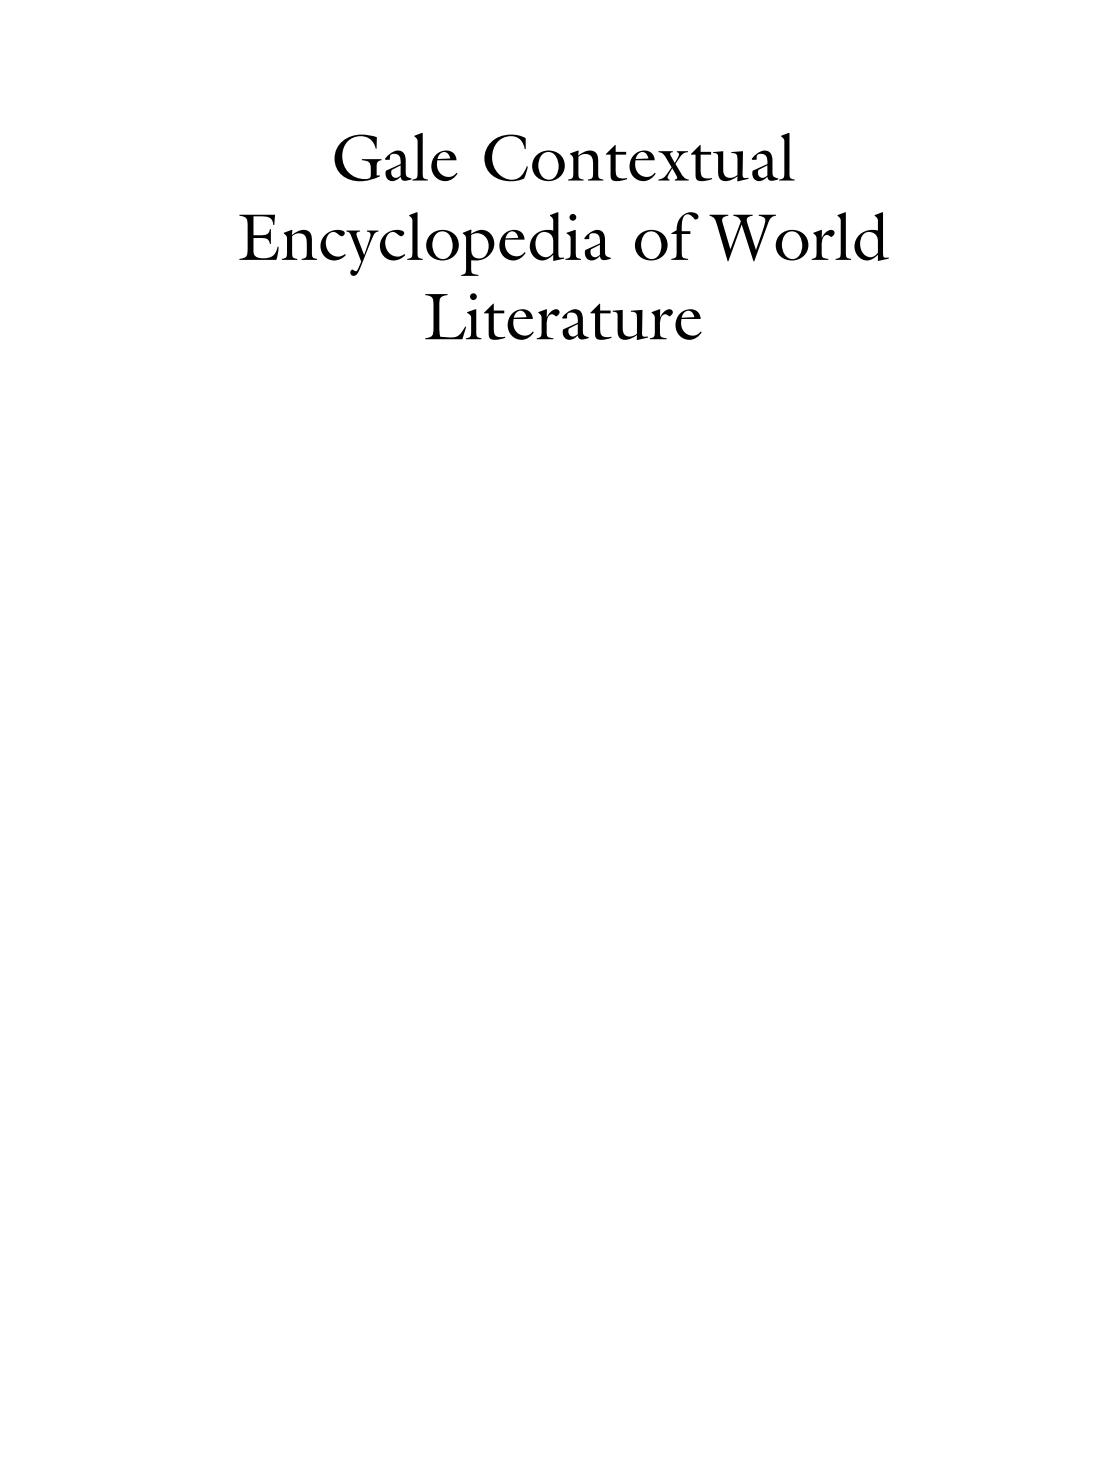 《盖尔背景世界文学百科全书》Gale Contextual Encyclopedia of World Literature 电子书下载地址